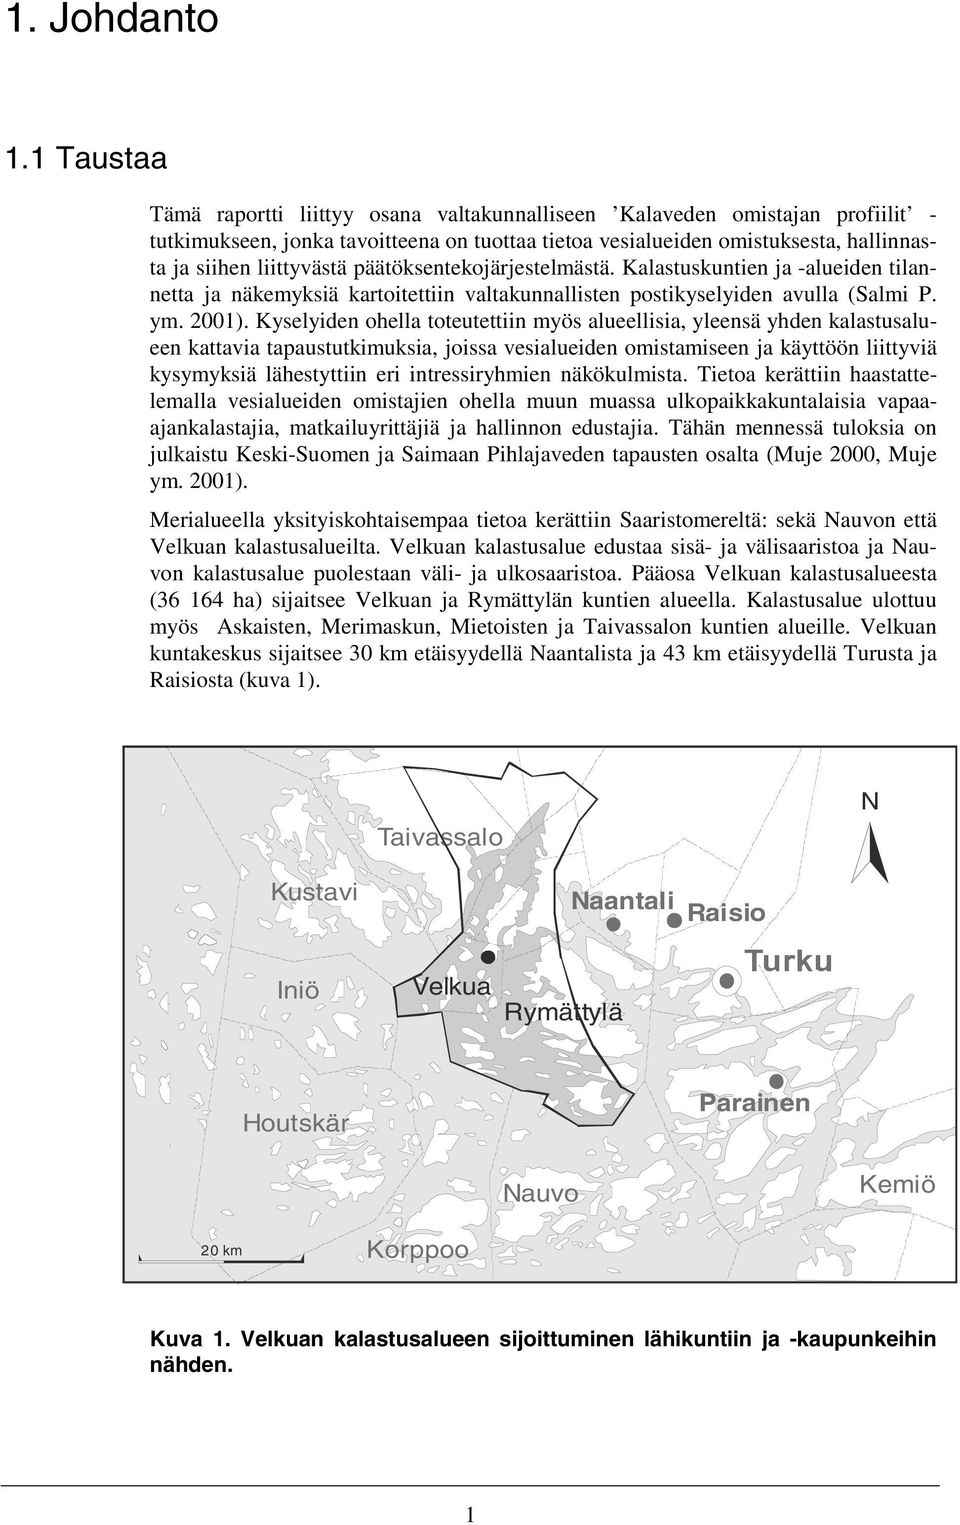 päätöksentekojärjestelmästä. Kalastuskuntien ja -alueiden tilannetta ja näkemyksiä kartoitettiin valtakunnallisten postikyselyiden avulla (Salmi P. ym. 2001).